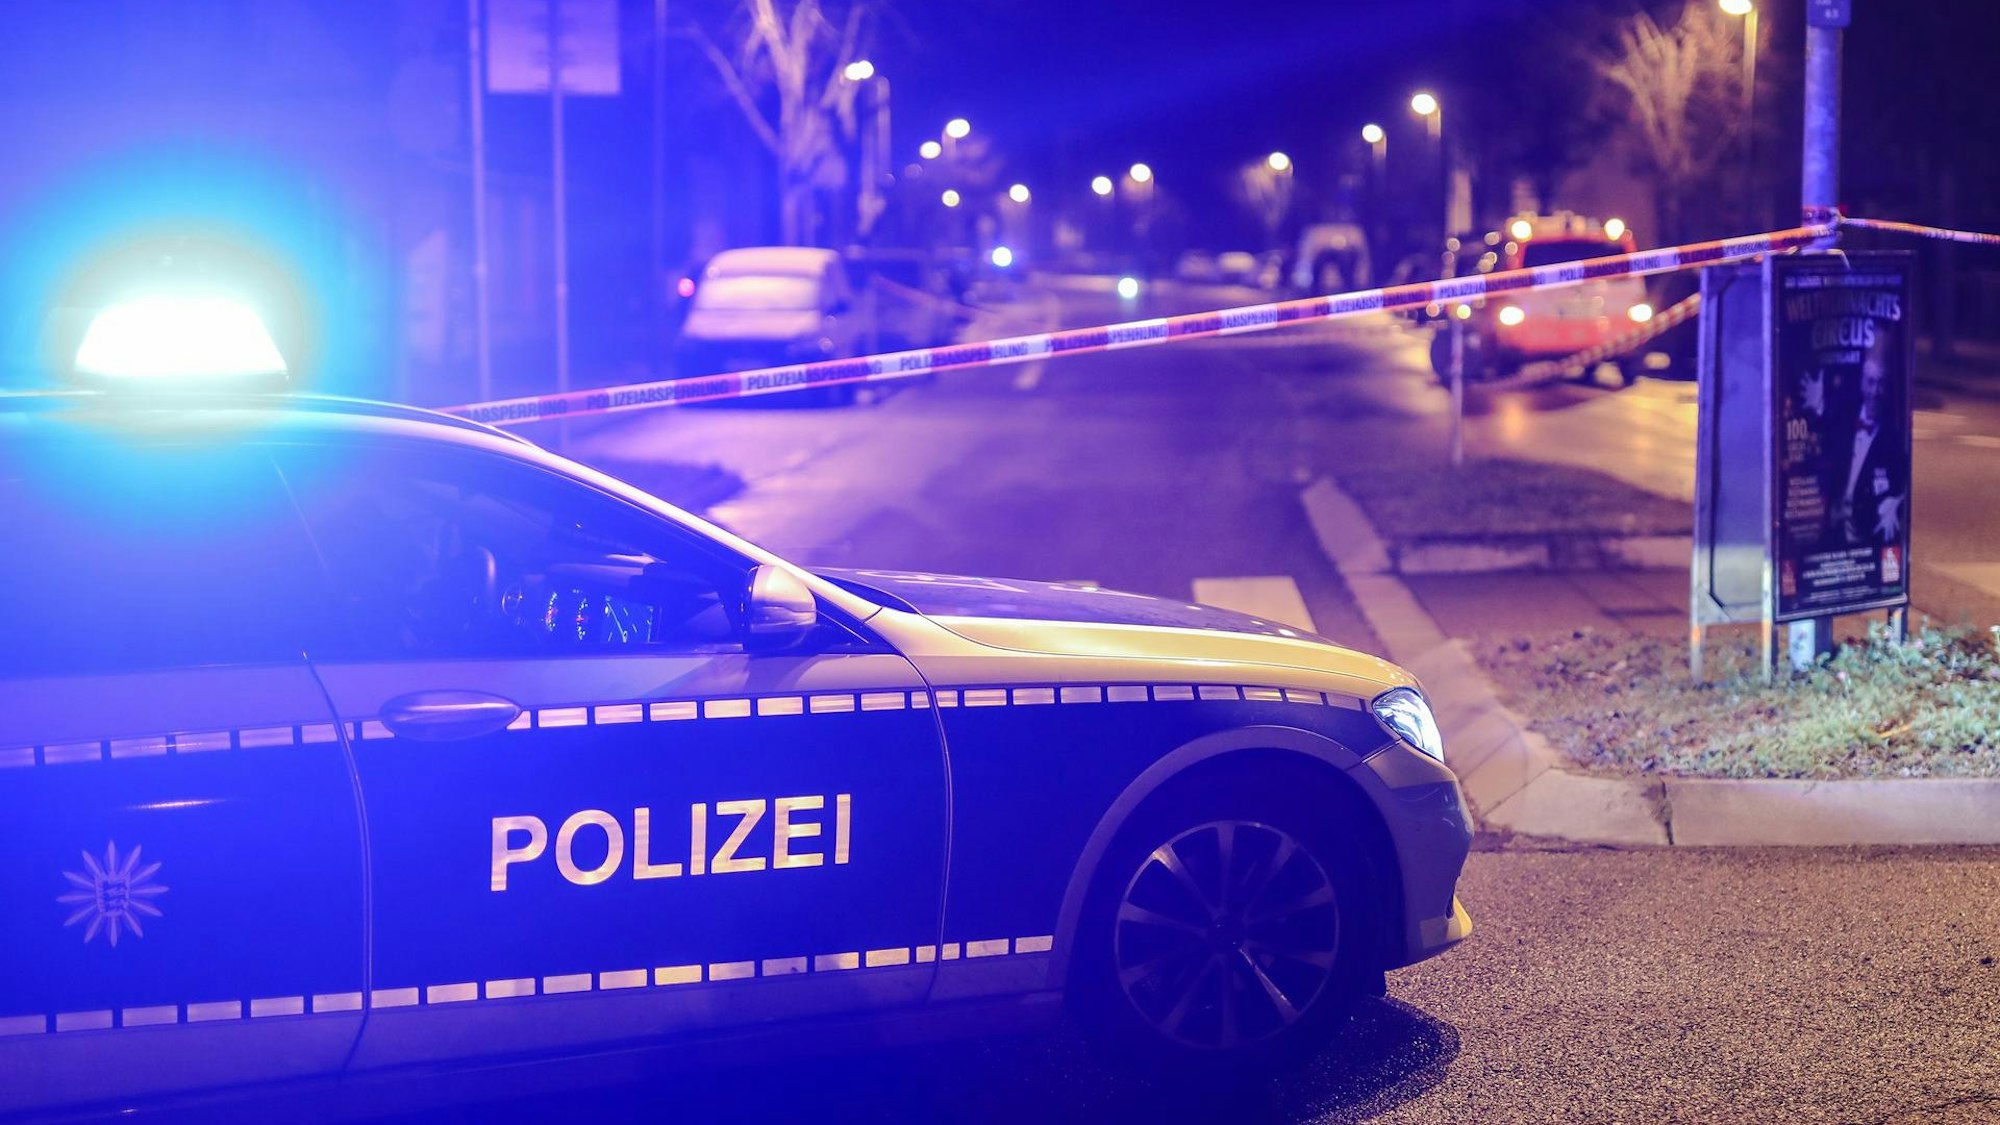 Ein Einsatzwagen der Polizei mit eingeschaltetem Blaulicht.Die Polizei sucht in Bielefeld nach einem unbekannten Täter, der einen 21-jährigen Mann gegen einen Zug geschubst haben soll.